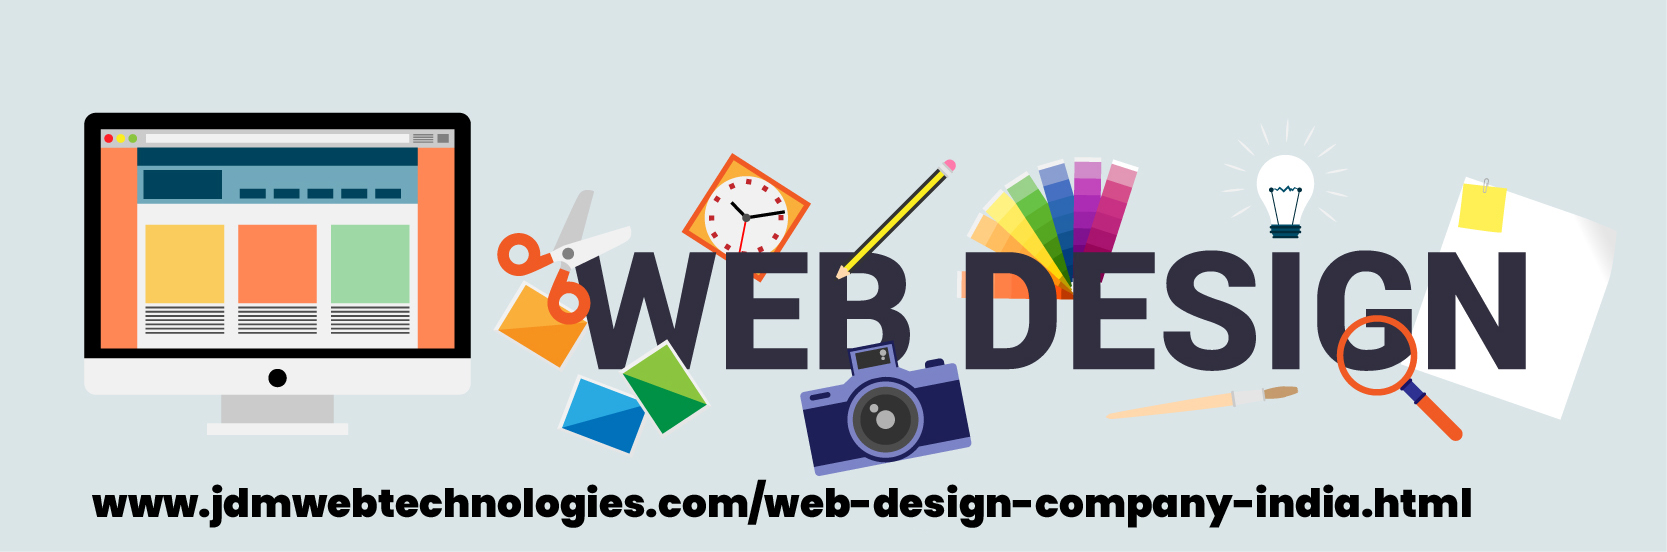 Custom Web Design Services in India